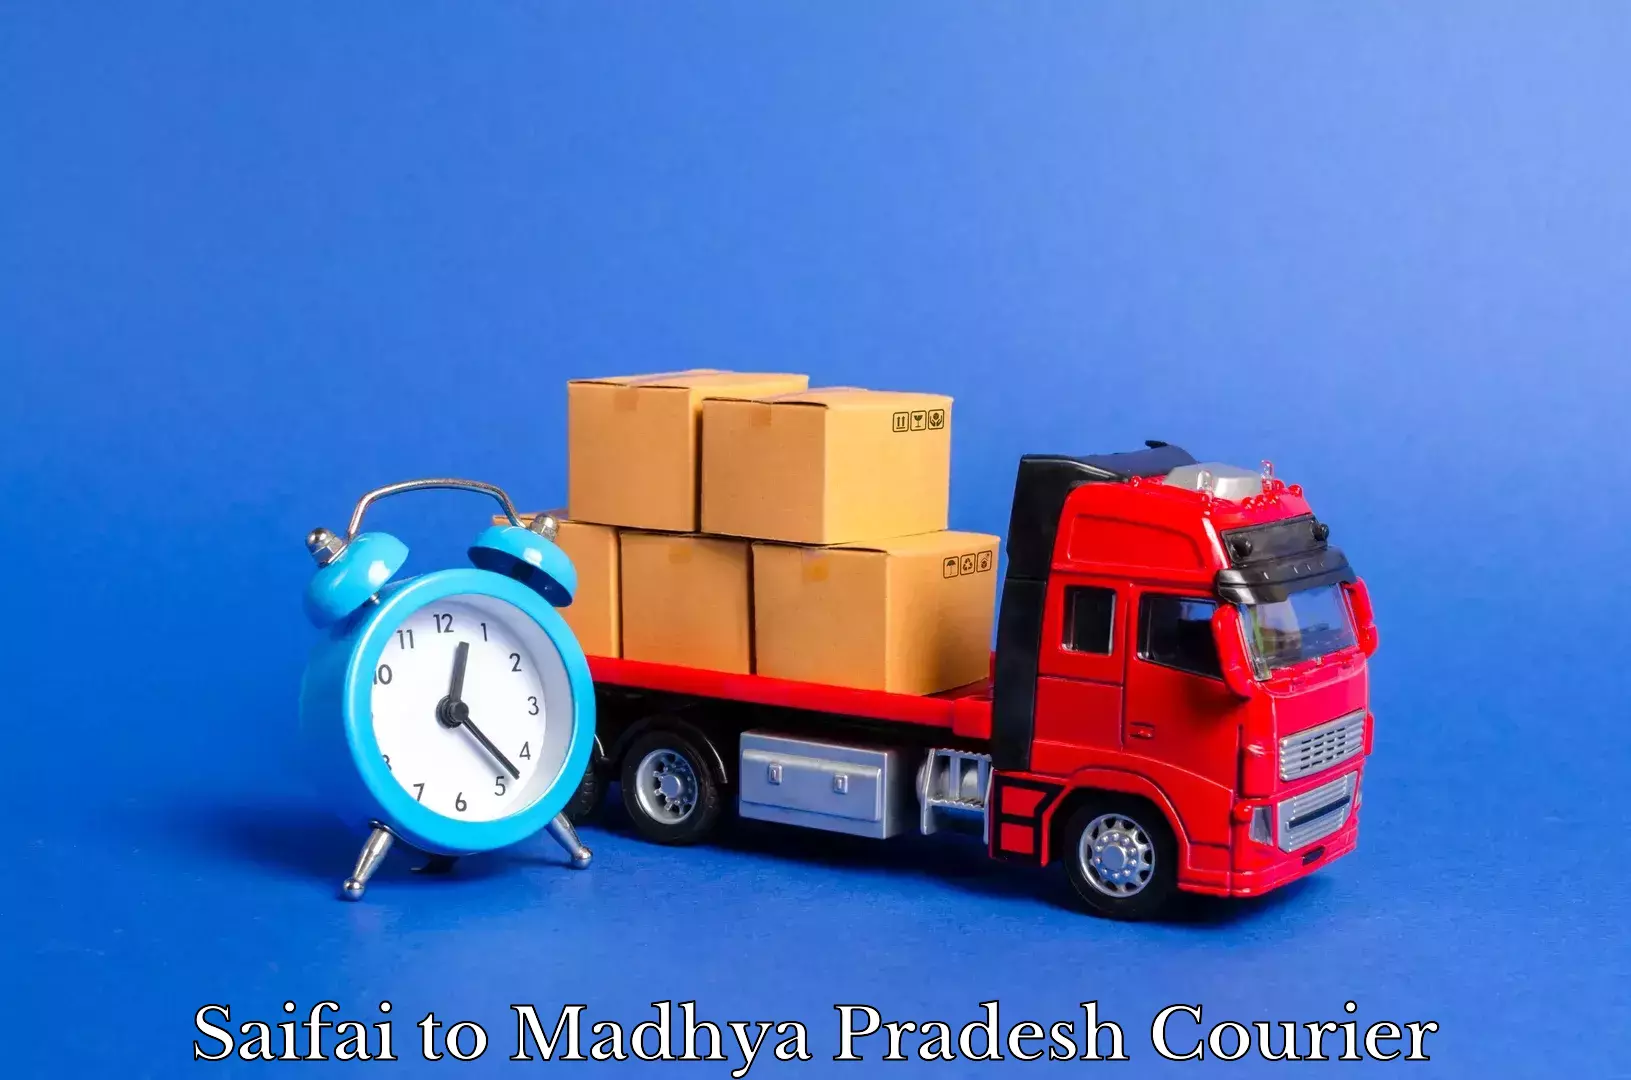 Furniture delivery service Saifai to Vidisha